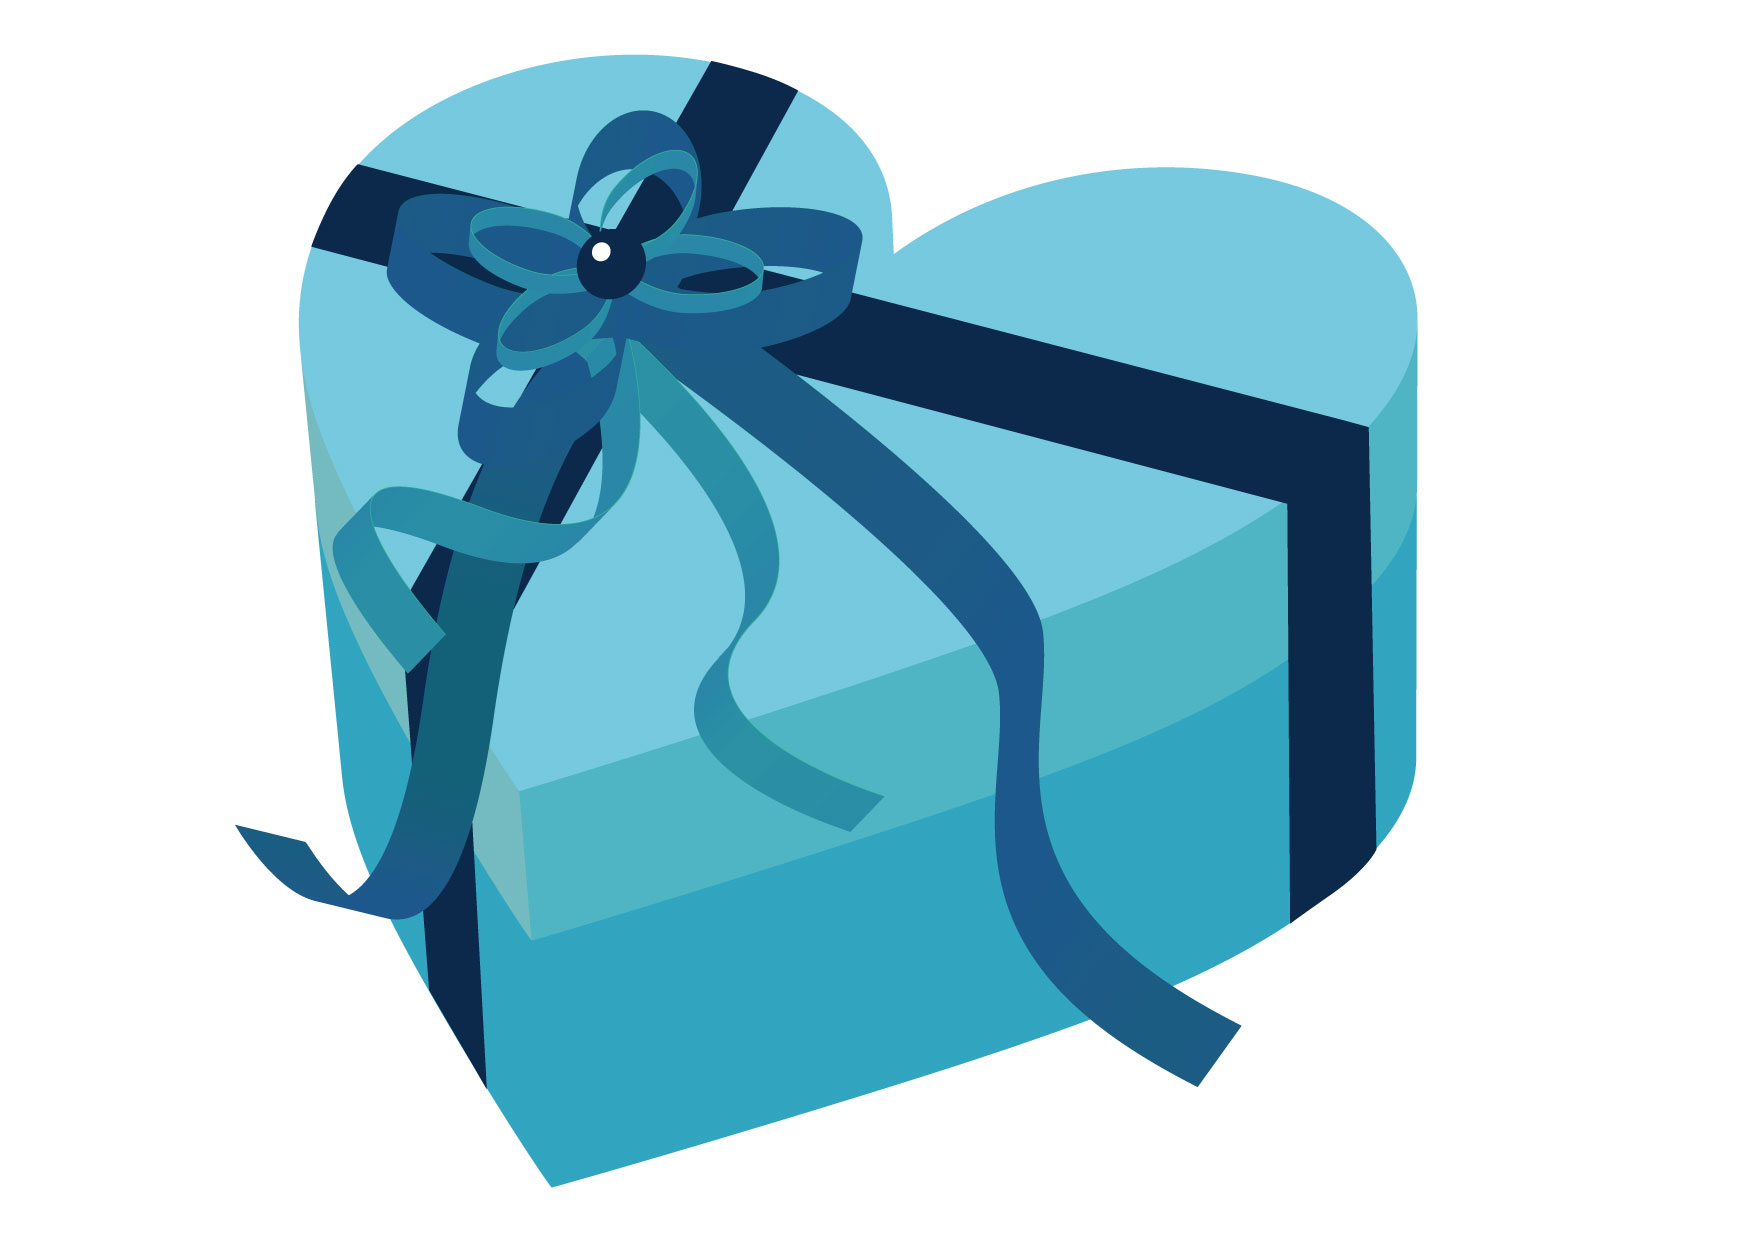 可愛いイラスト無料 バレンタイン ハート ブルー 箱 Free Illustration Valentine Heart Blue Box 公式 イラストダウンロード